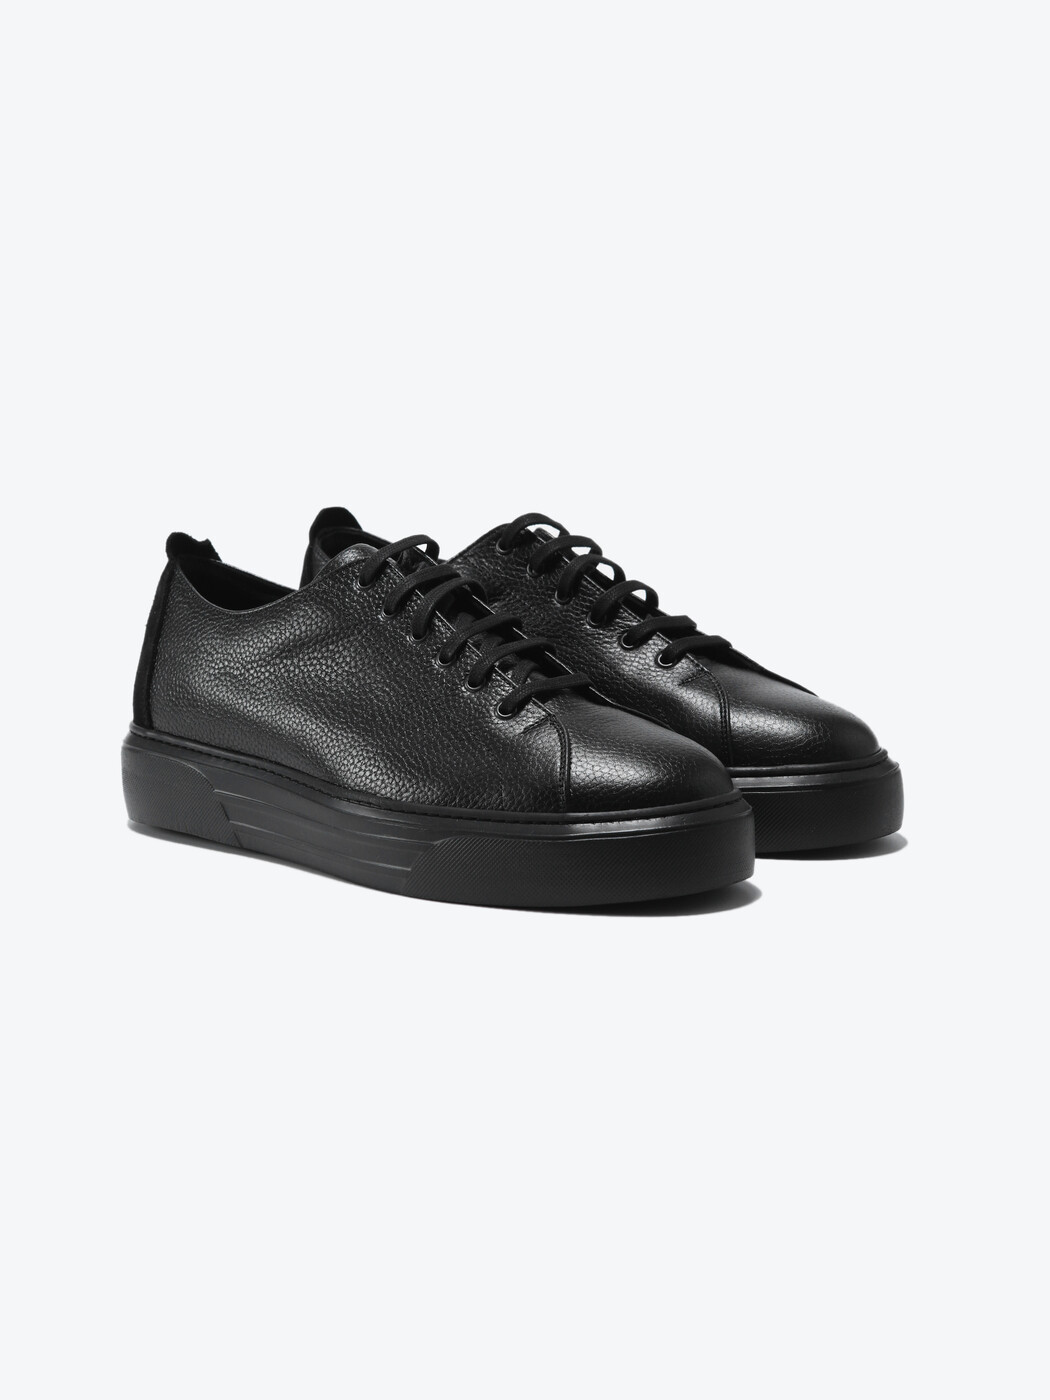 KİP - Siyah Spor Ayakkabı (1)